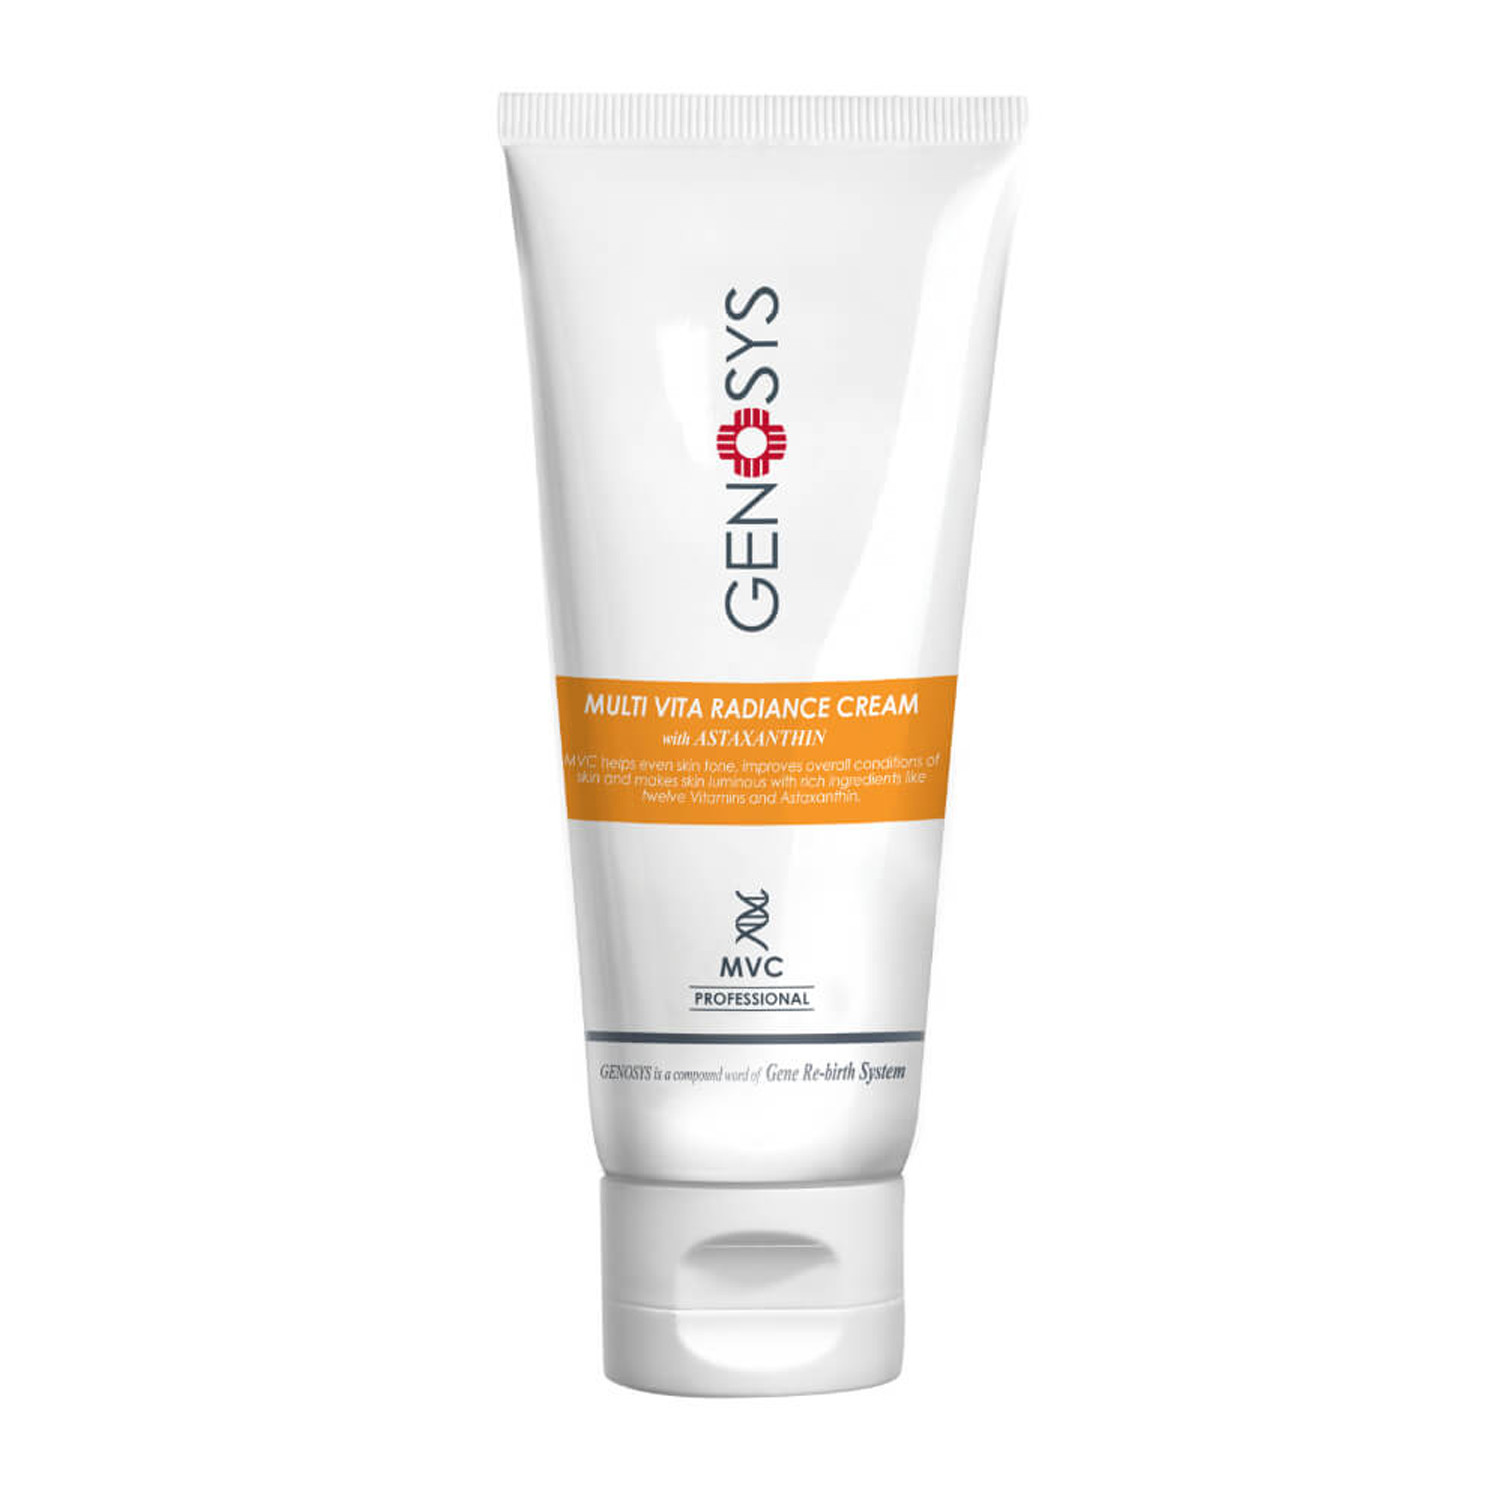 Отзывы о Genosys Multi Vita Radiance Cream - Мультивитаминный крем для сияния кожи